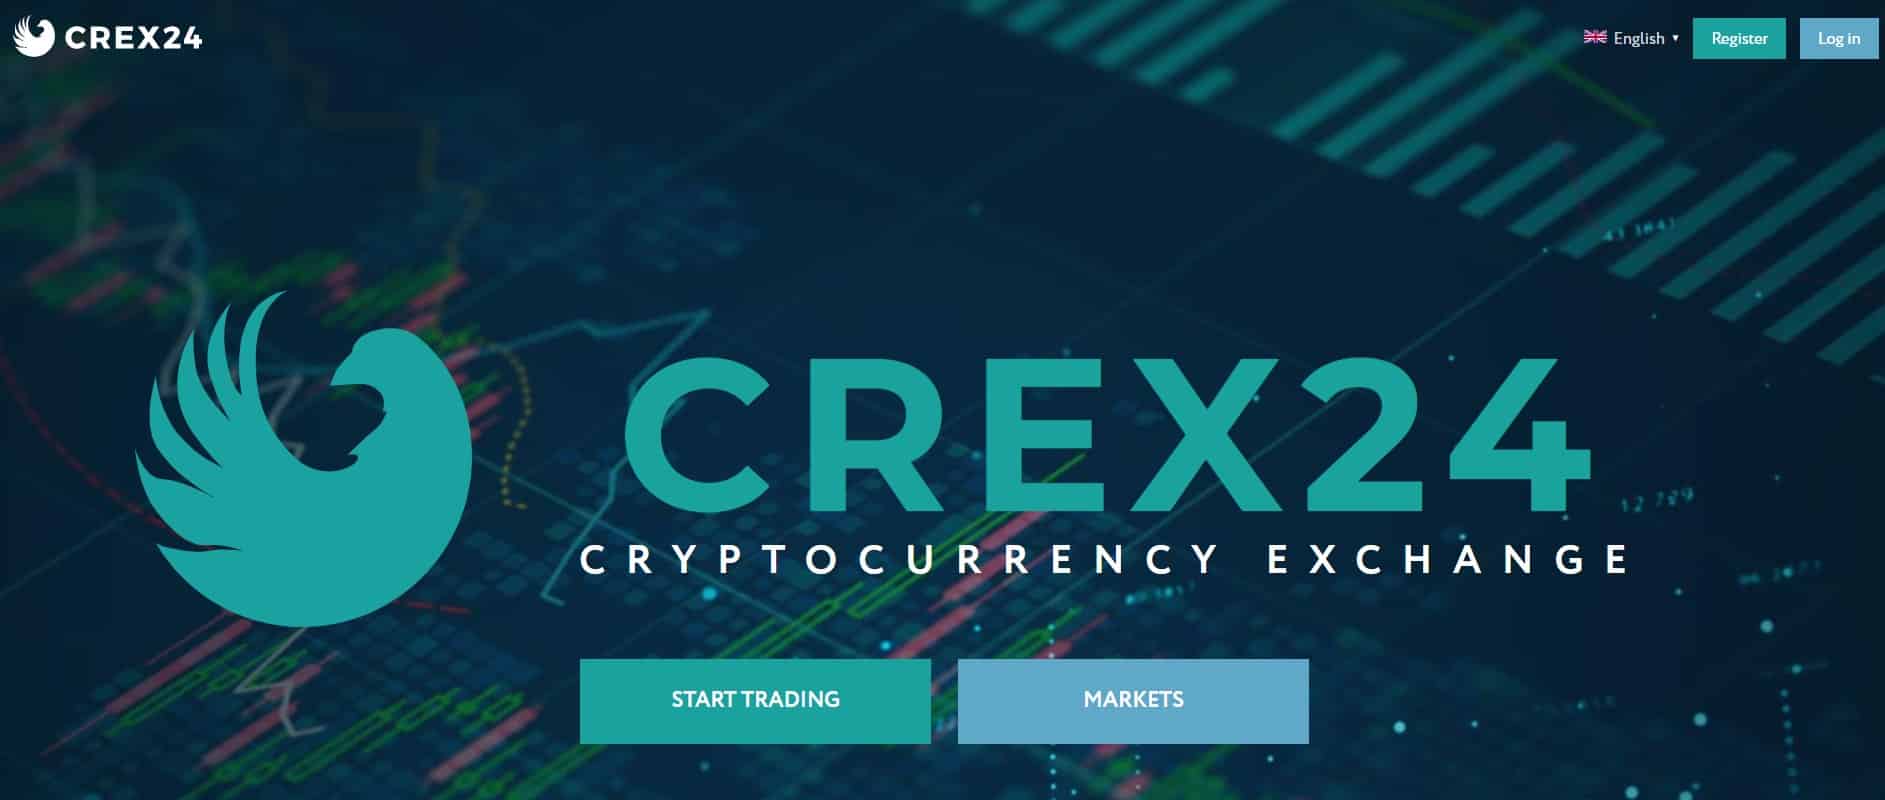 Crex24 website